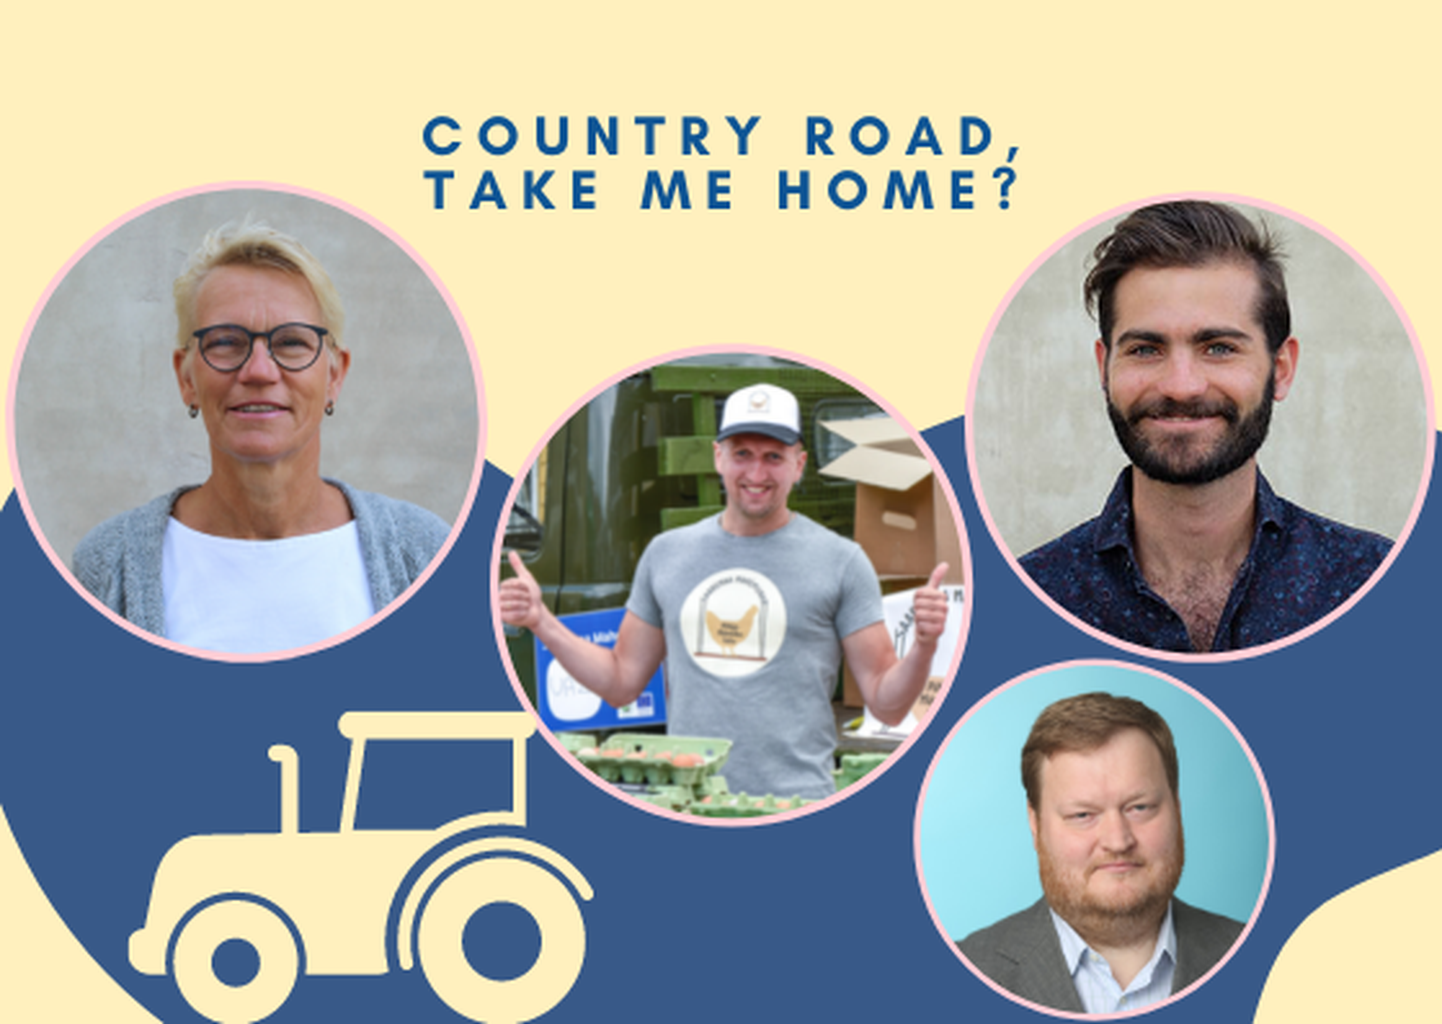 Põhjamaade Ministrite Nõukogu Eesti esinduse uus ingliskeelne podcast “Country Road, Take Me Home?” keskendub maal elamise võludele ja valudele.